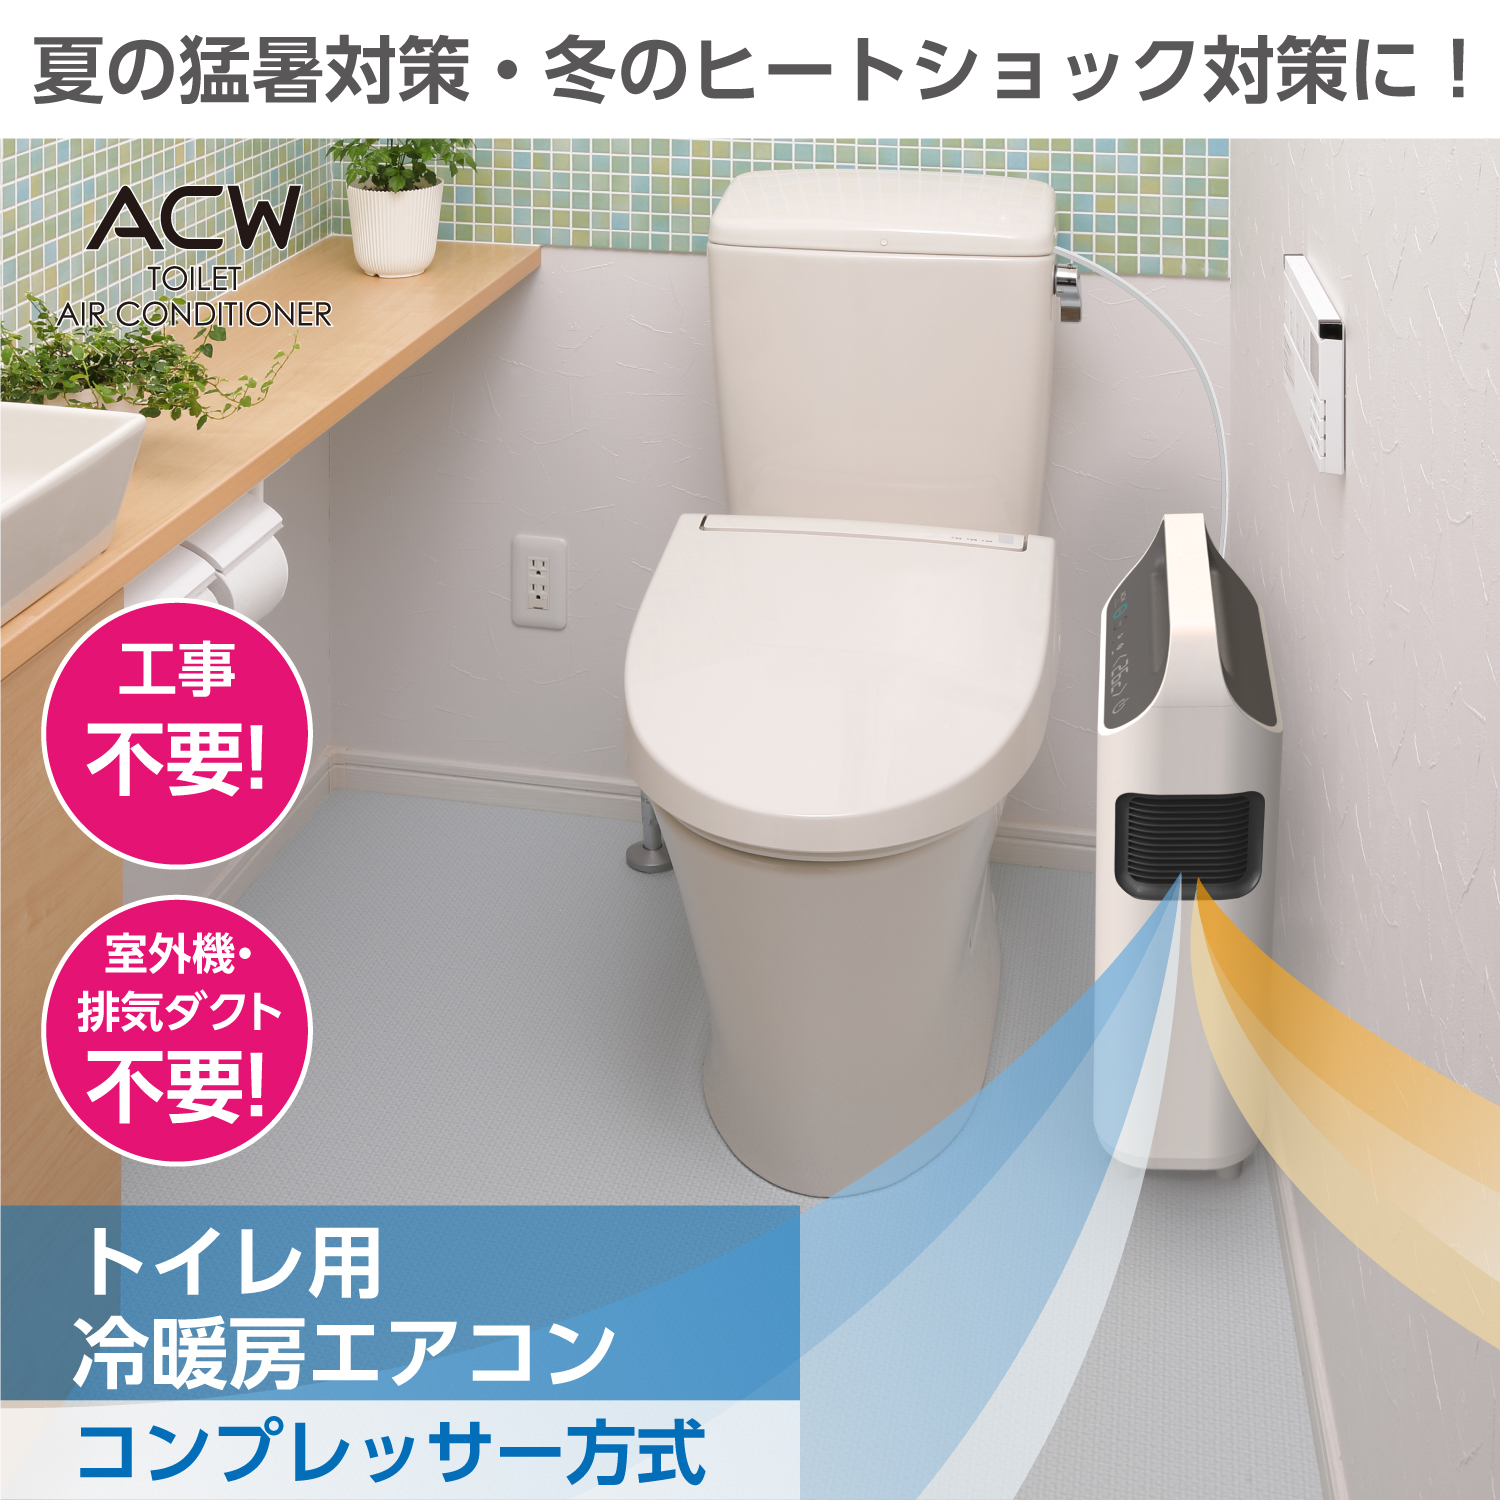 トイレ用冷暖房エアコン ACW A10-TA-208 工事不要！室外機不要！ダクト不要！トイレの熱中症・ヒートショック対策に トイレエアコン 空調